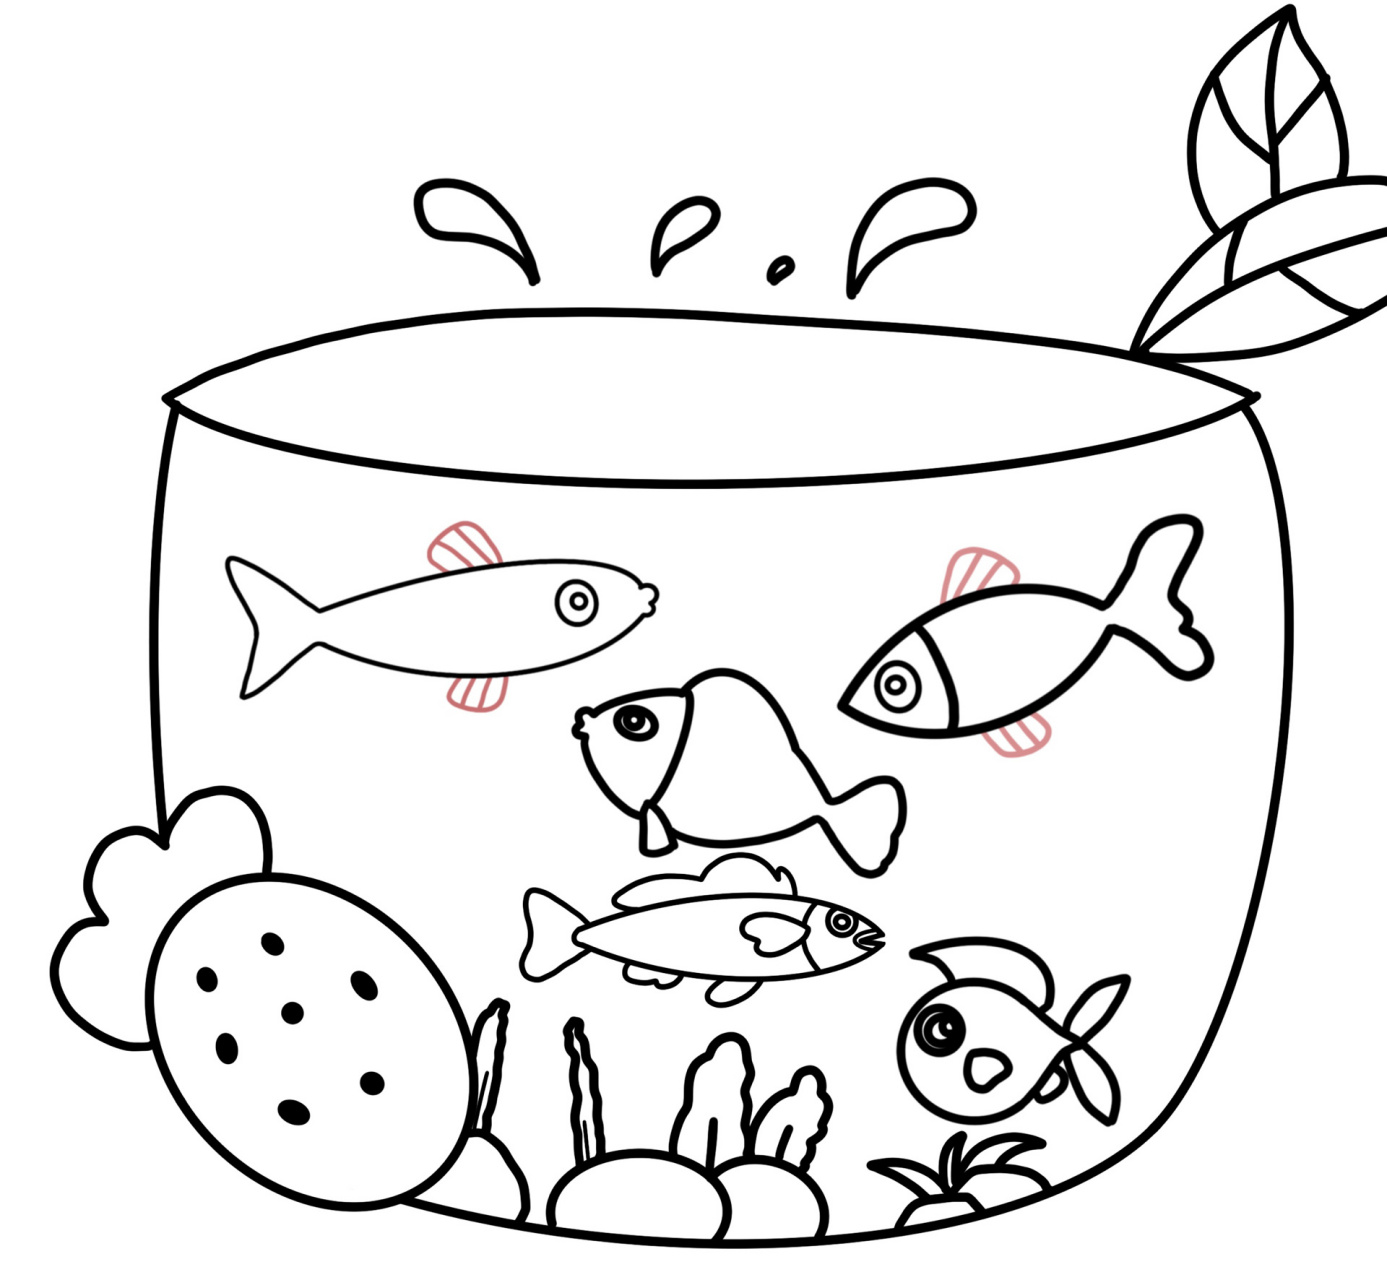 正方形鱼缸简笔画图片